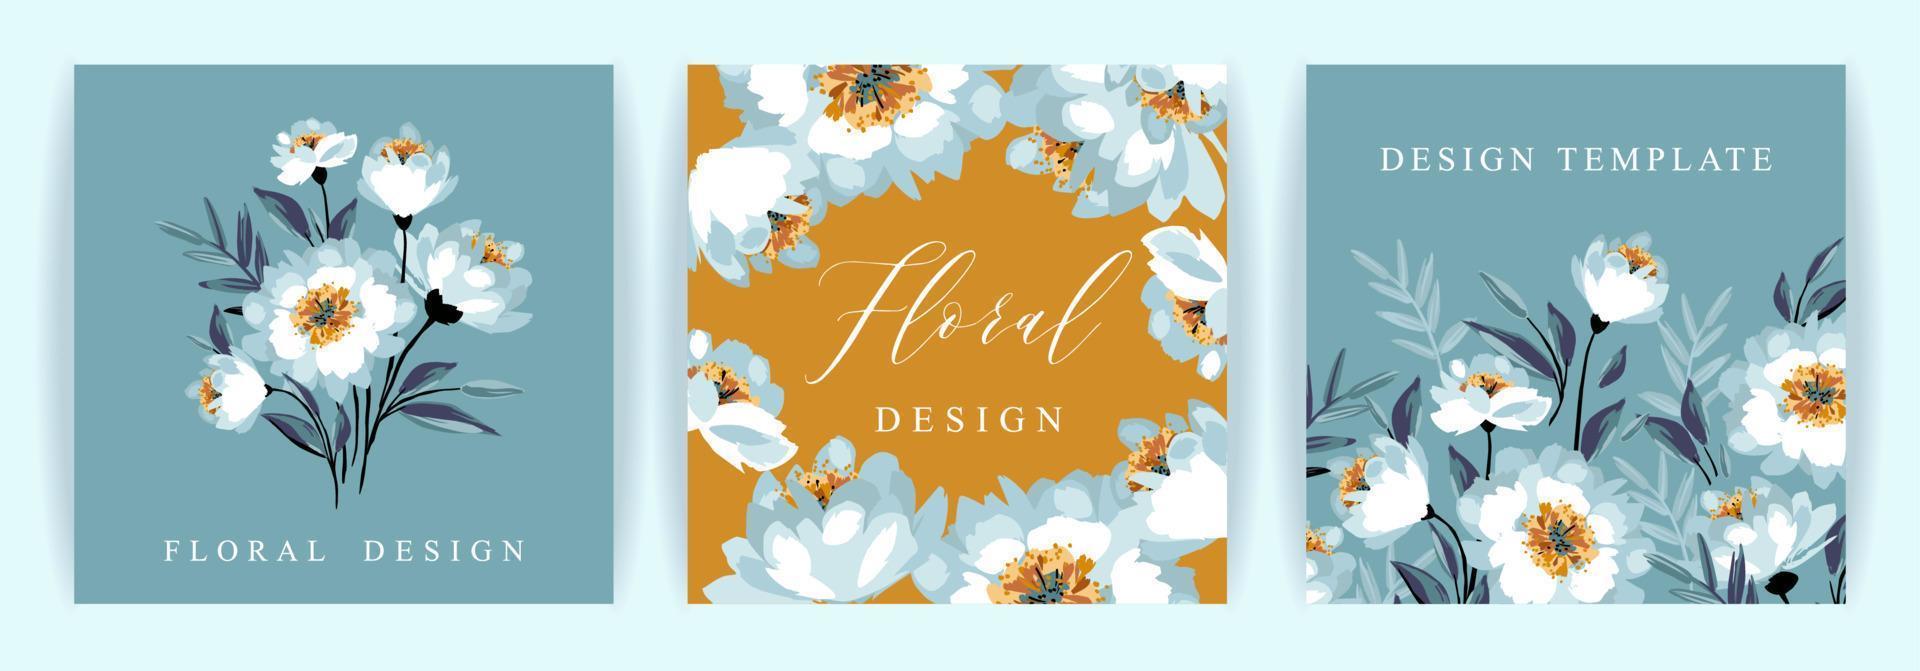 conjunto de diseño floral vectorial. plantilla para tarjeta, afiche, volante, portada, decoración del hogar y otros usos. vector